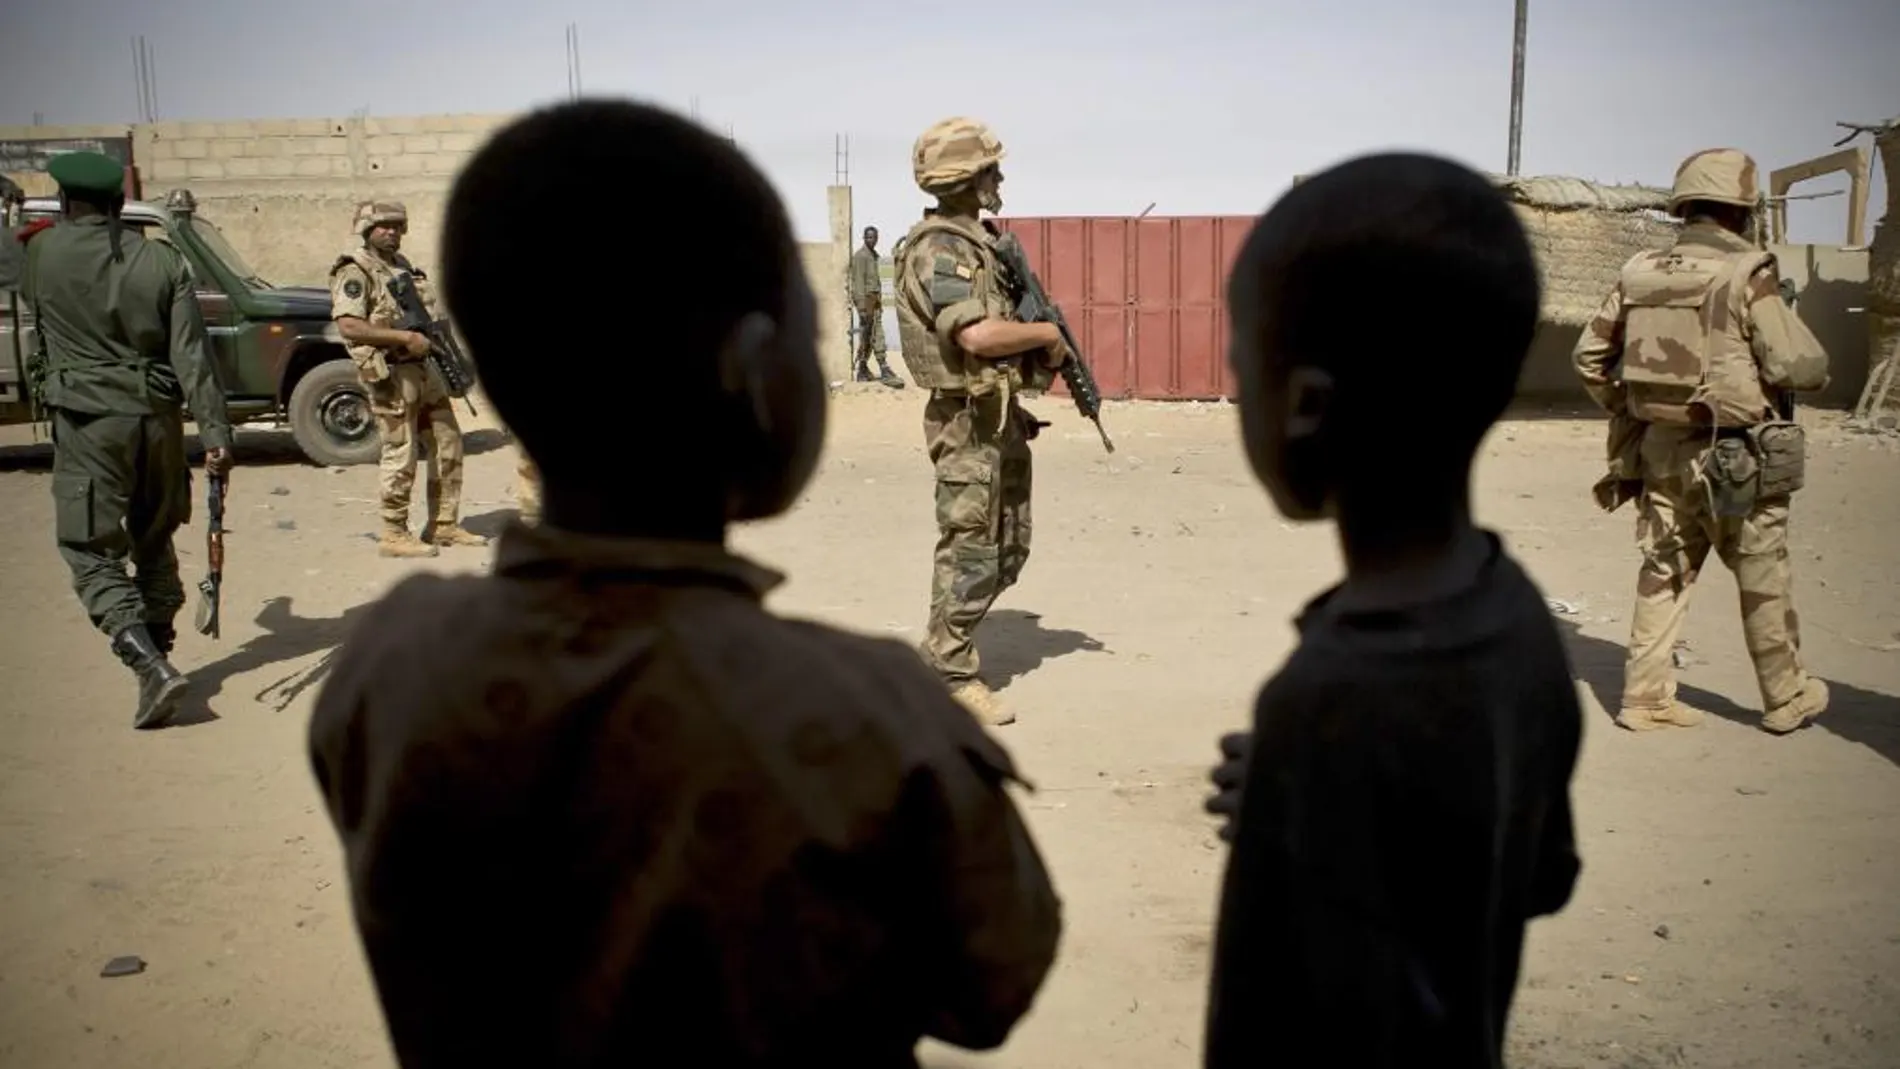 Soldasos frances y un militar malí montan guardia a las afueras de Gao